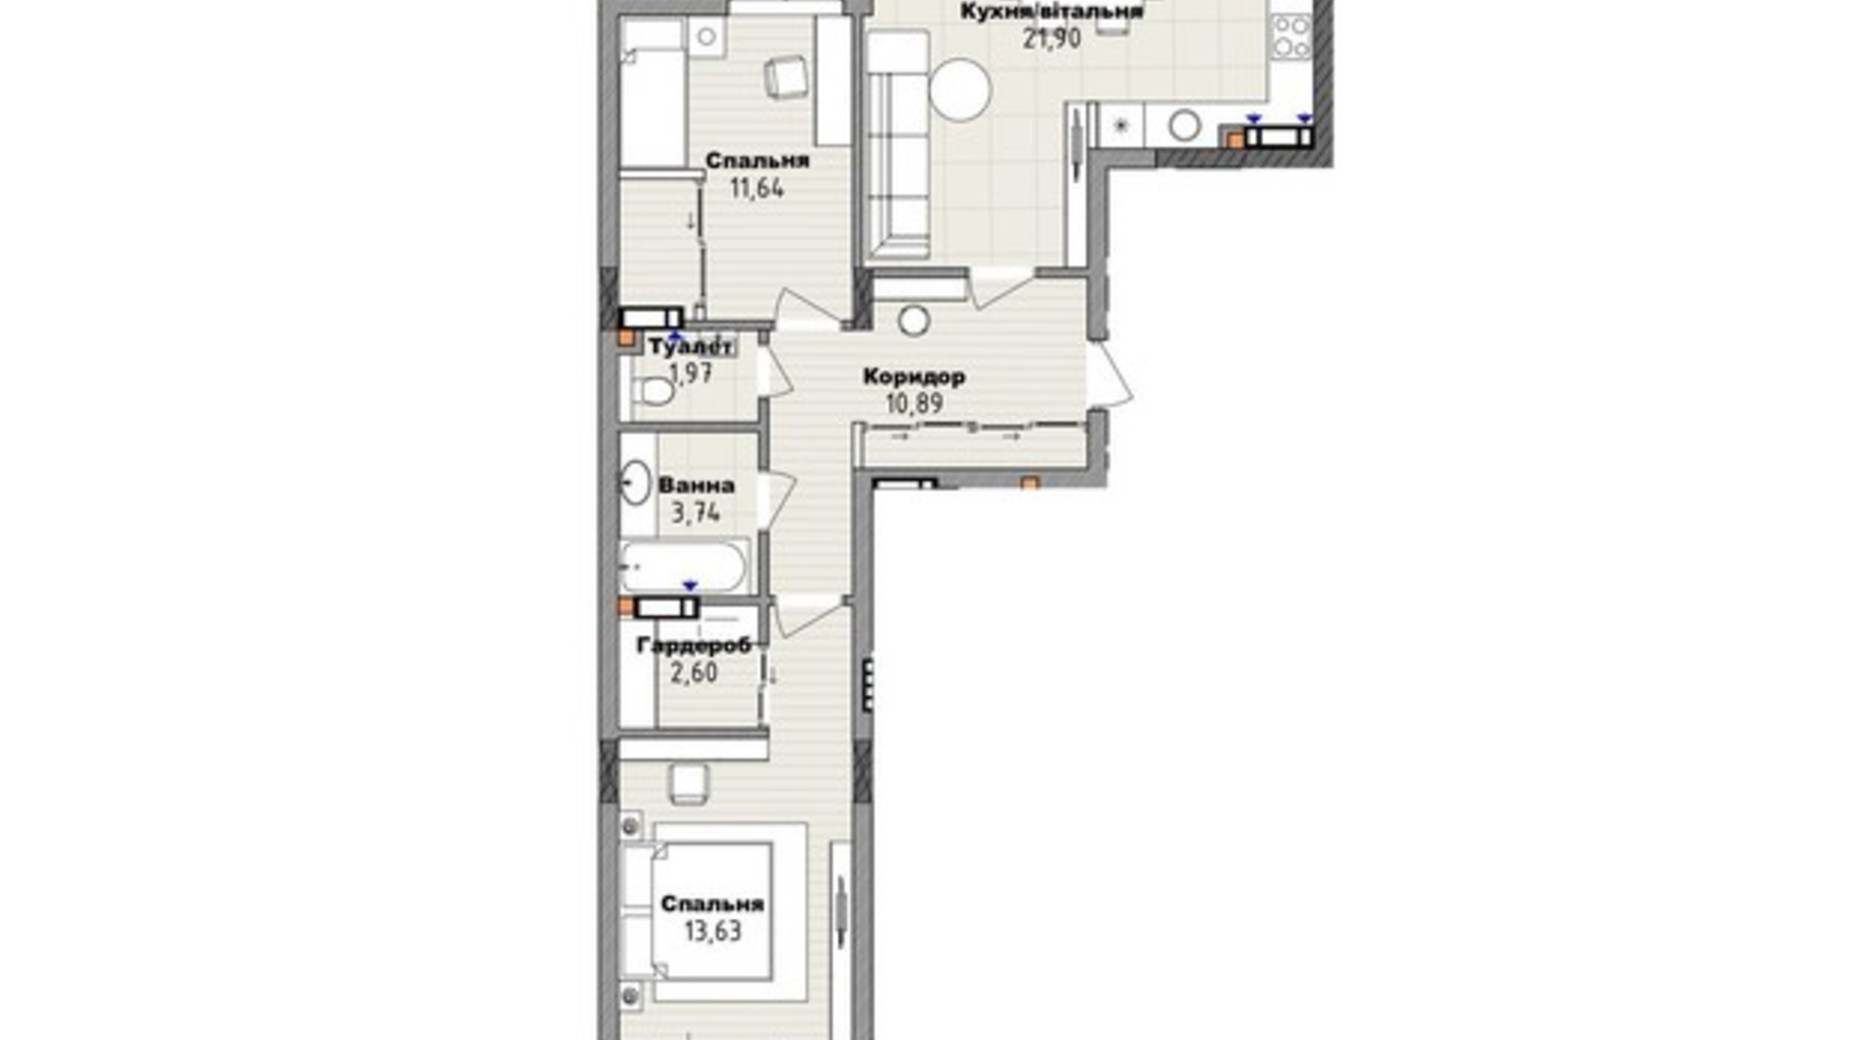 Планування 2-кімнатної квартири в Клубний будинок San Marco 70.2 м², фото 661795